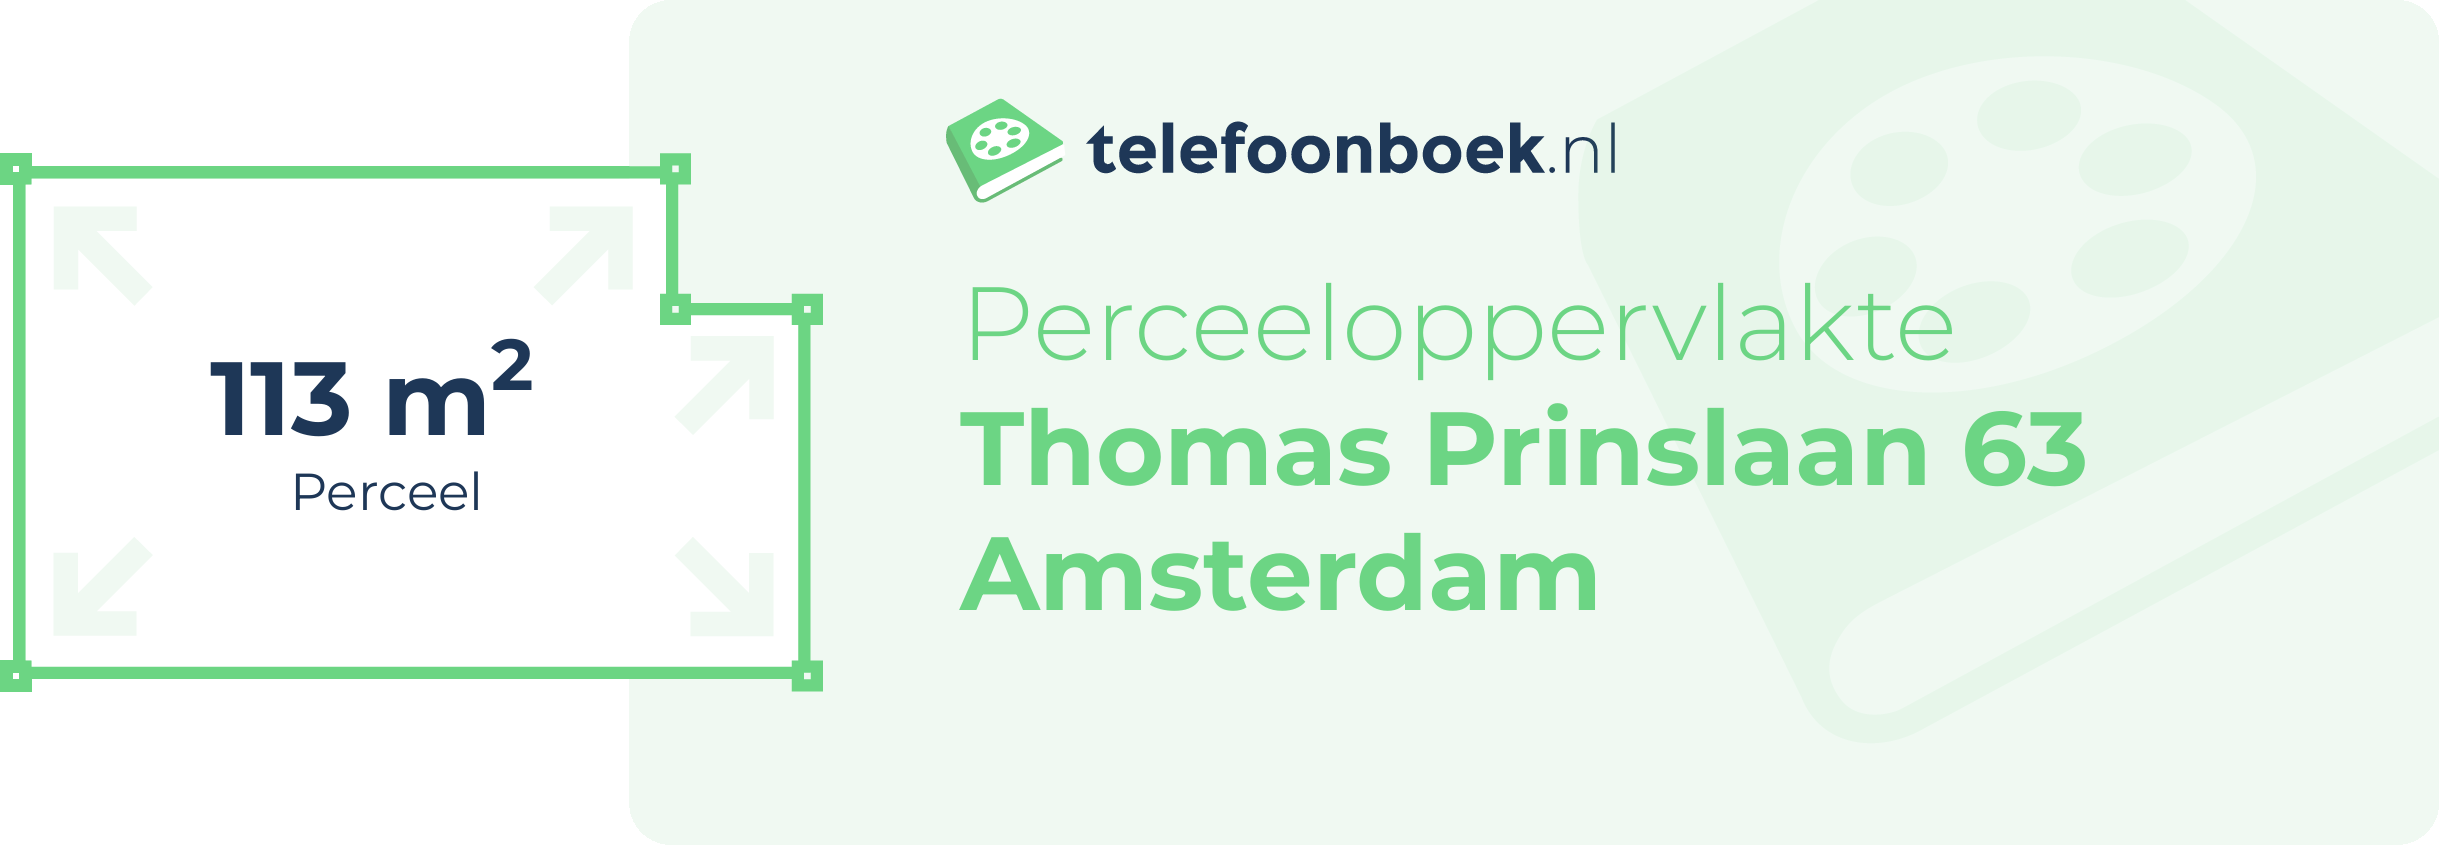 Perceeloppervlakte Thomas Prinslaan 63 Amsterdam